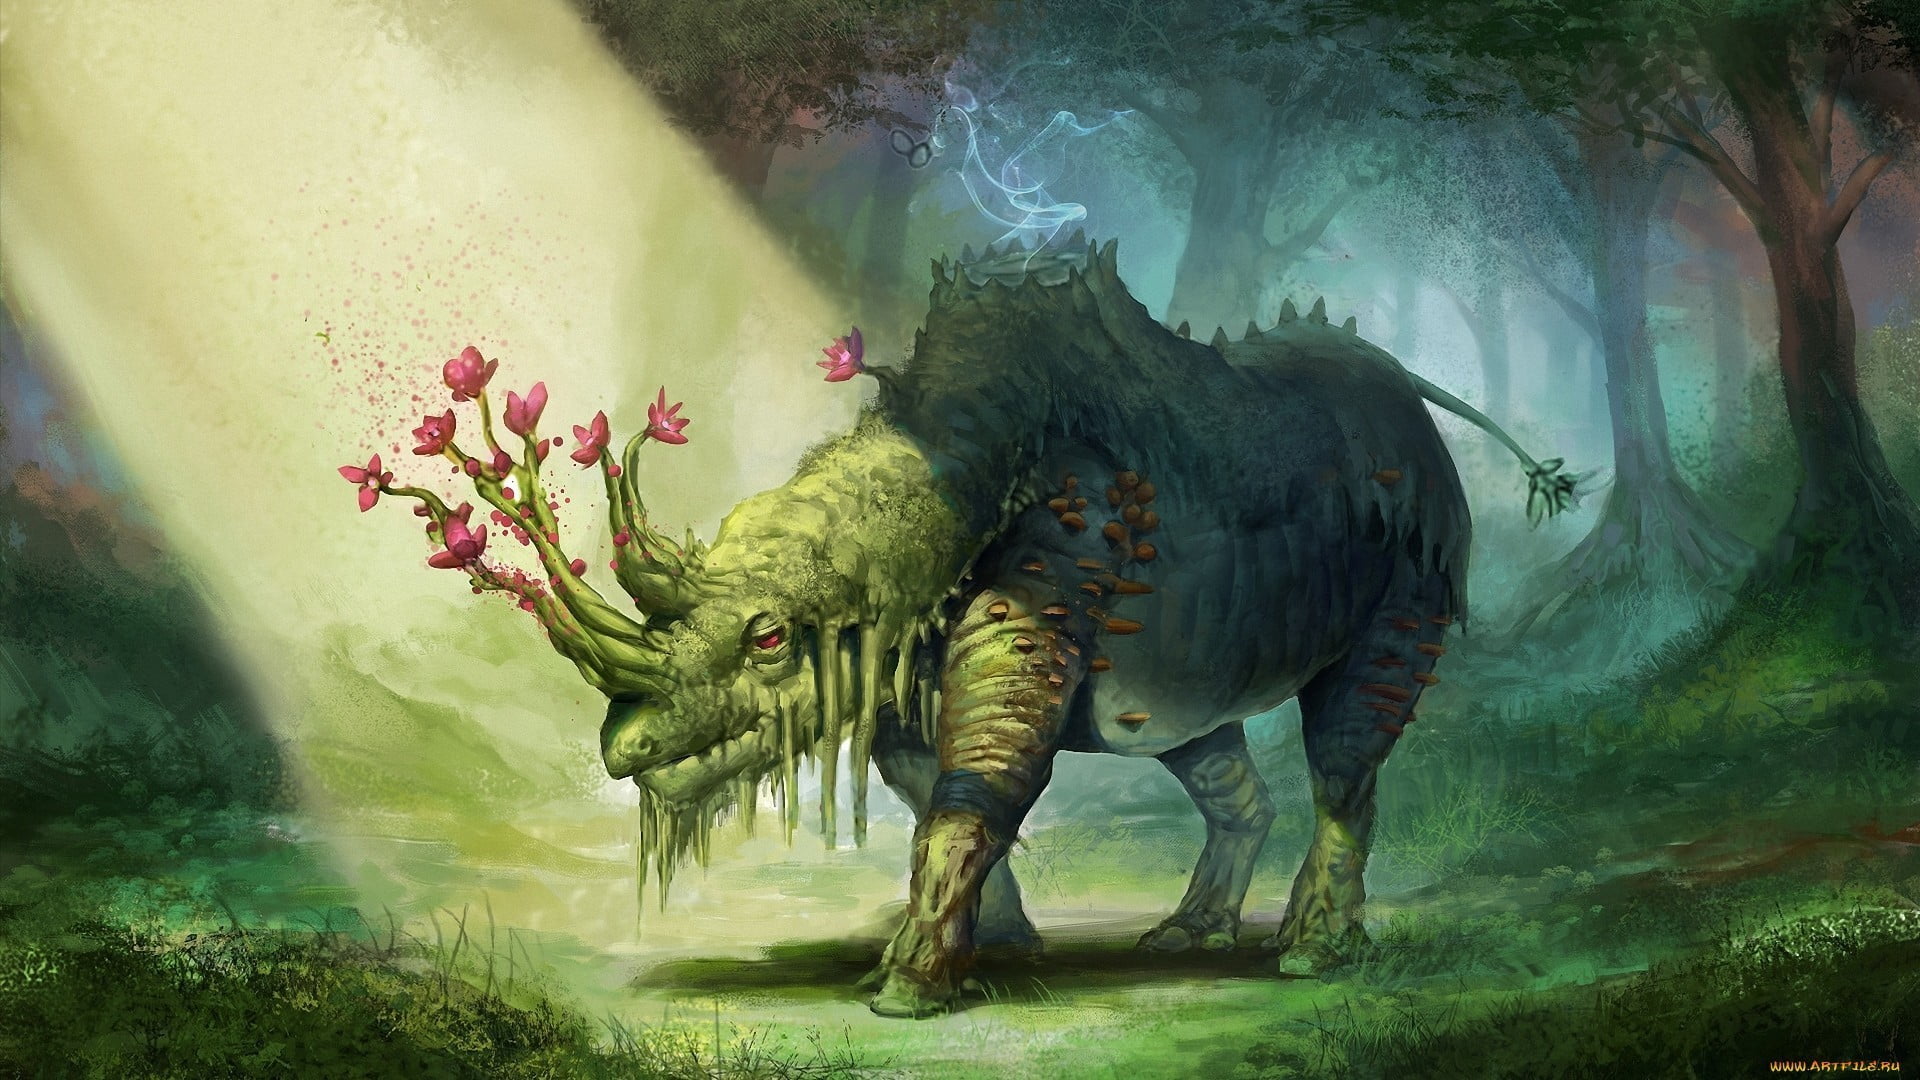 Animal illustration, fantasy art, digital art HD wallpaper | Wallpaper Flare